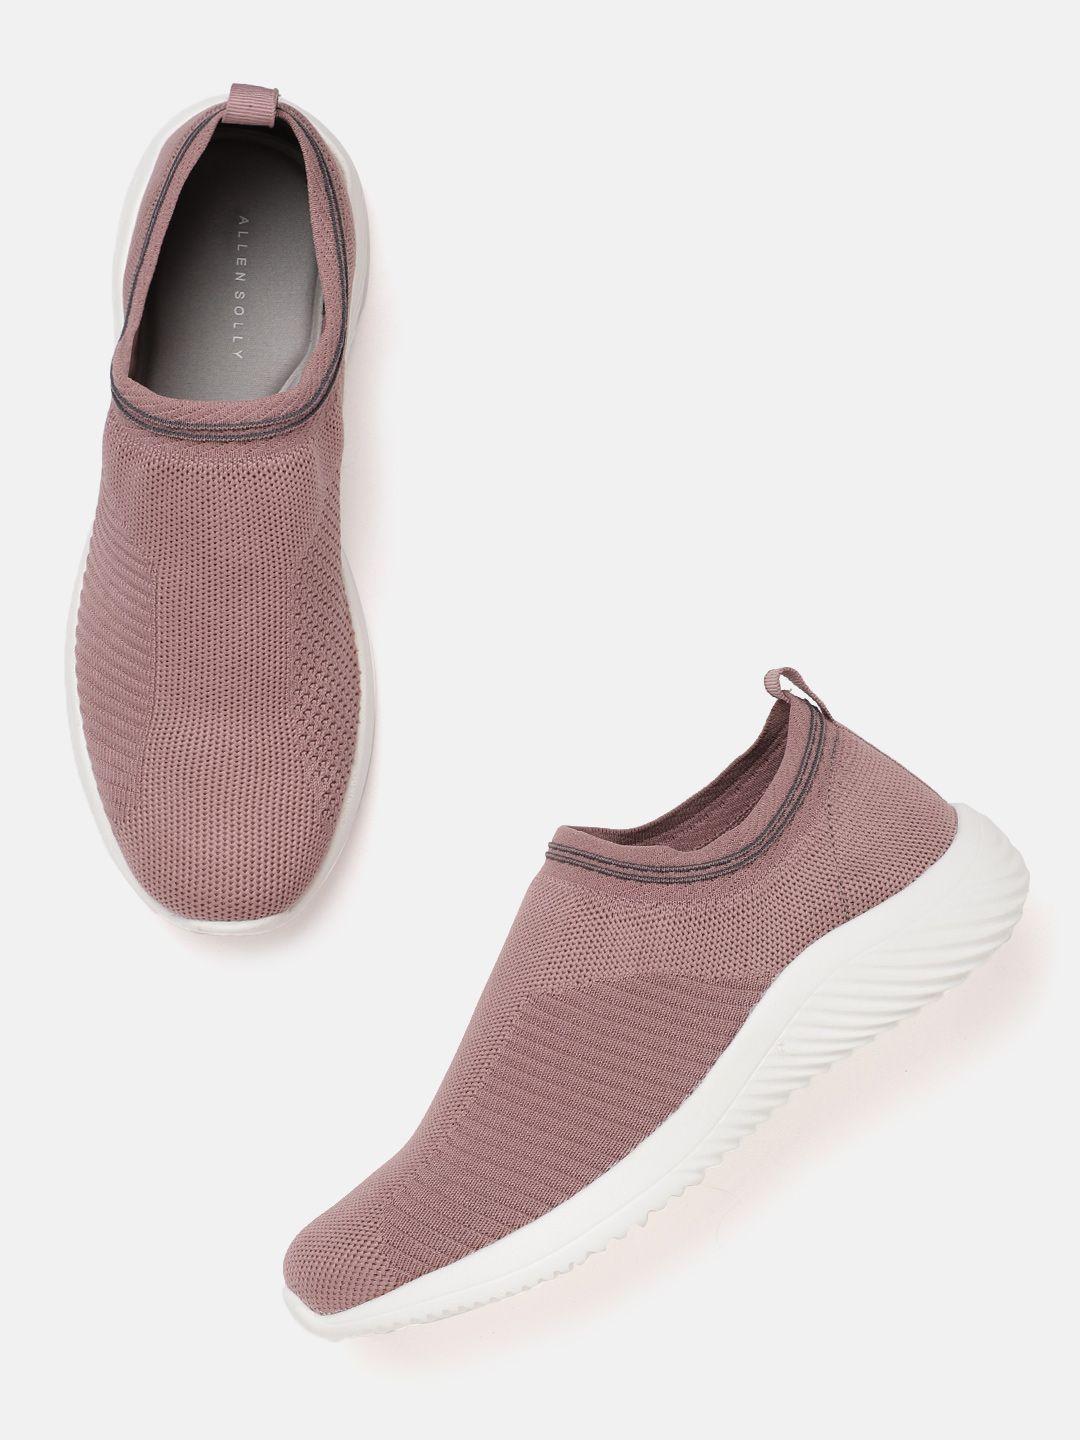 allen solly women dusty pink woven design slip-on sneakers